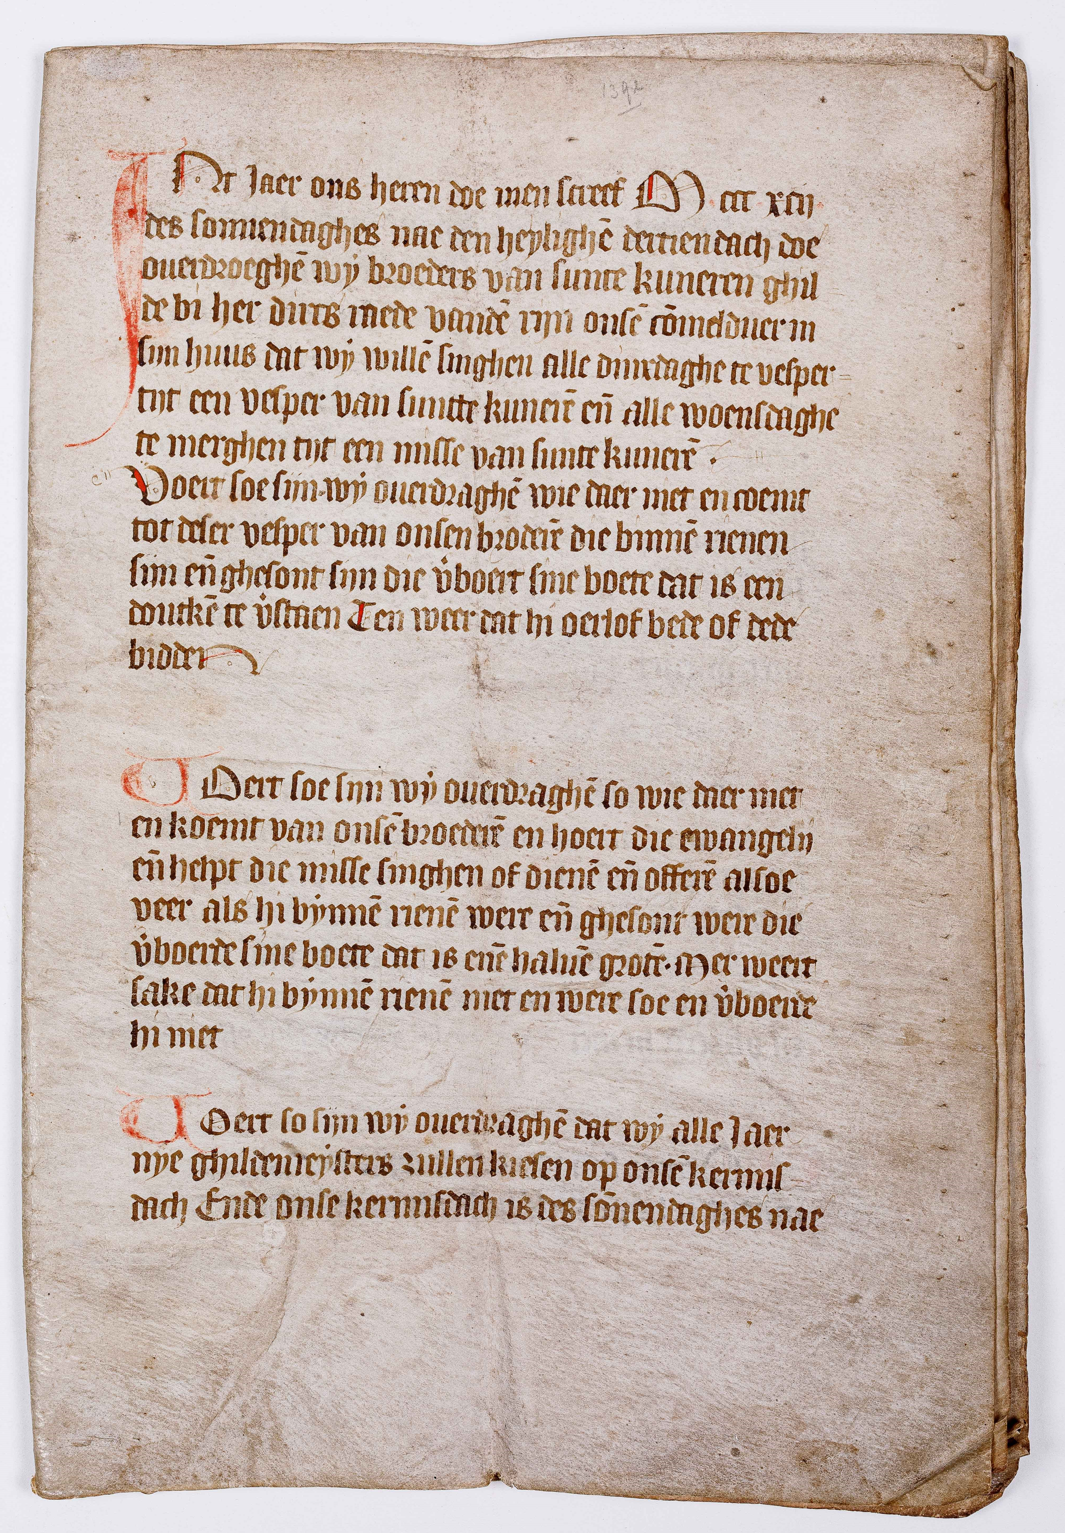 Oprichtingsakte van het St. Cunera- en Heilige Sacramentsgilde, archieftoegang 152, inv.nr. 1329